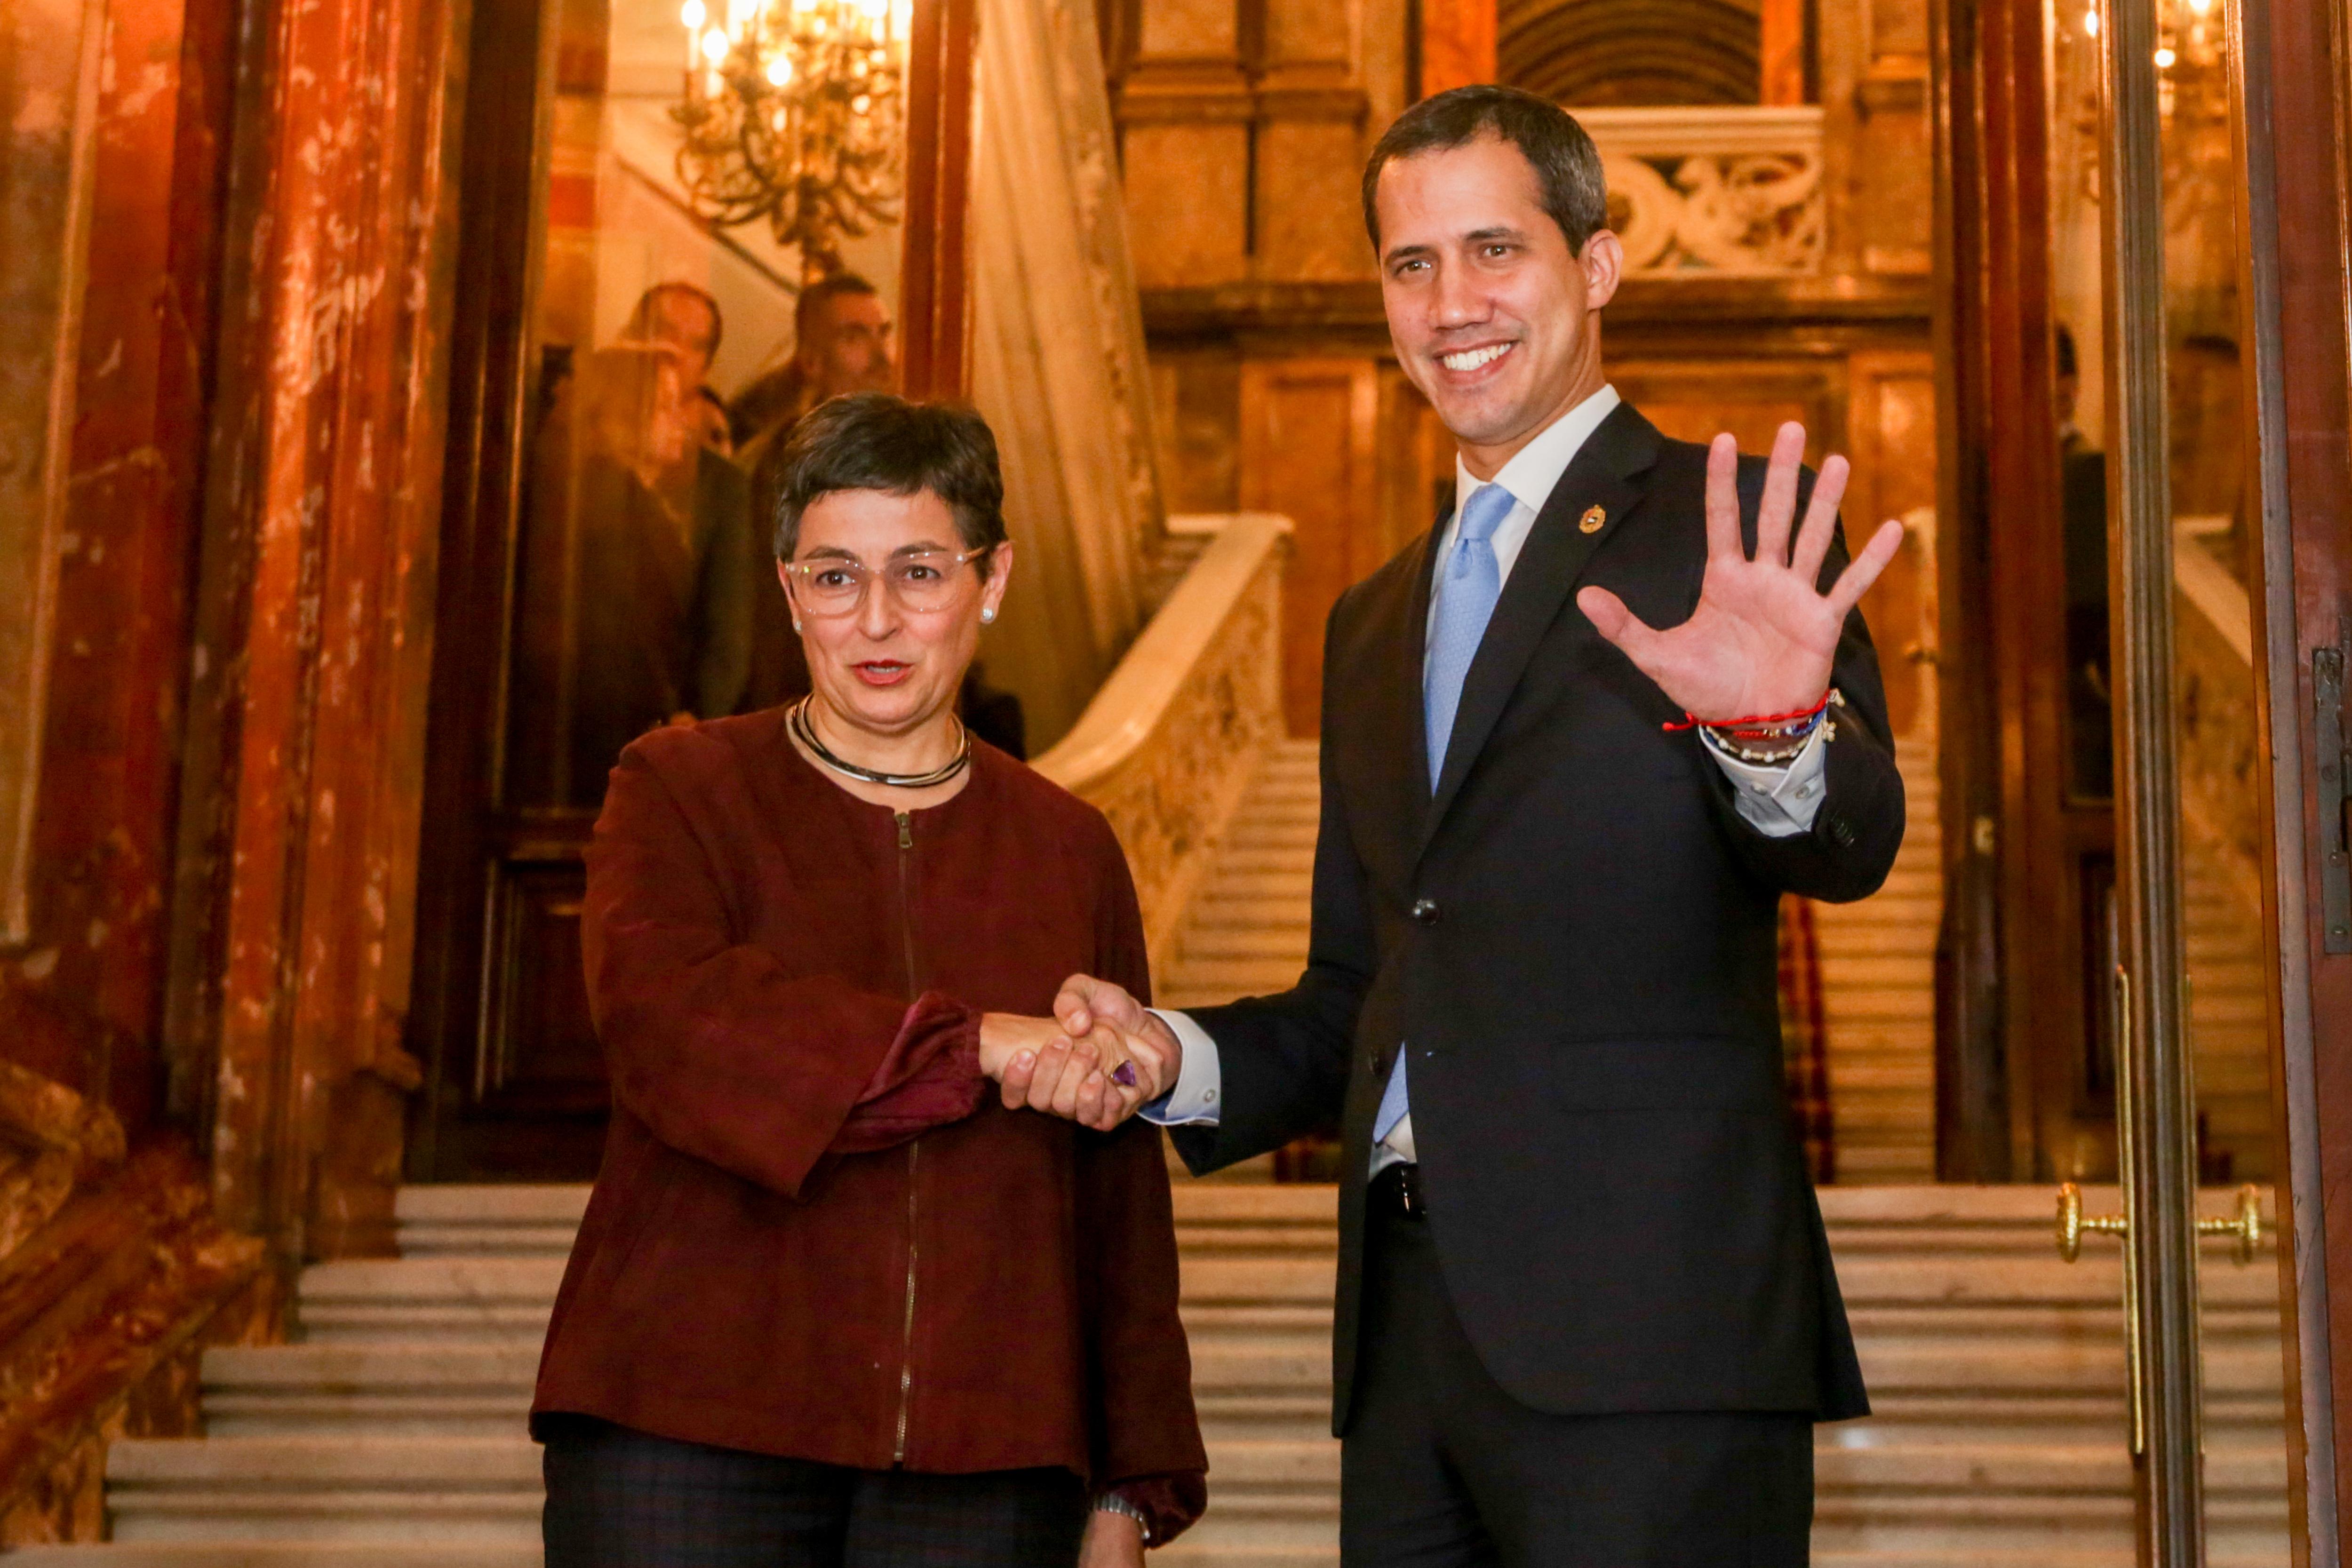 El presidente encargado de Venezuela Juan Guaidó se reúne con la ministra de Asuntos Exteriores UE y Cooperación 